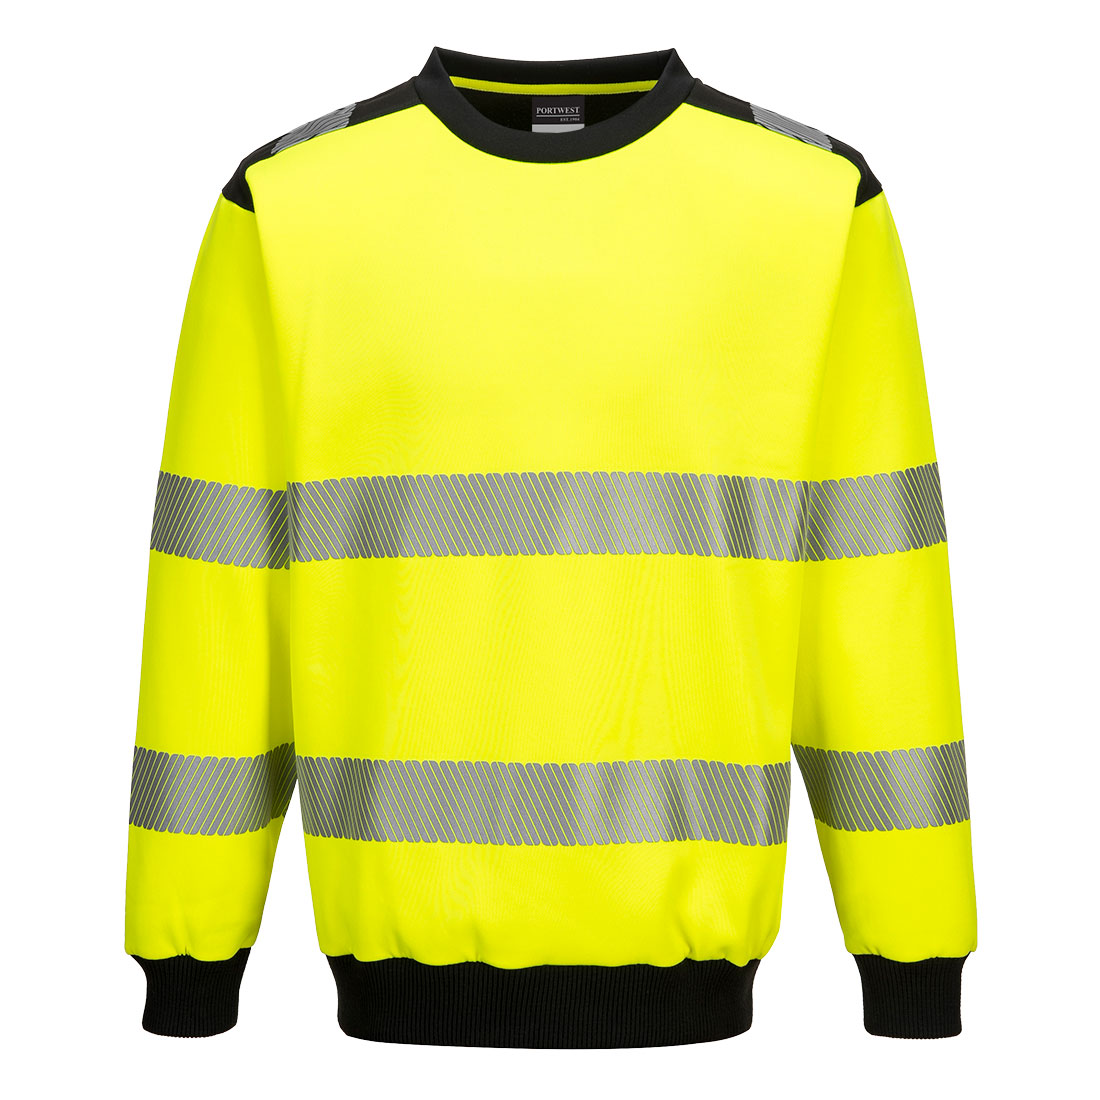 PW3 Hi-Vis Crew Neck Sweatshirt - Yellow/Black